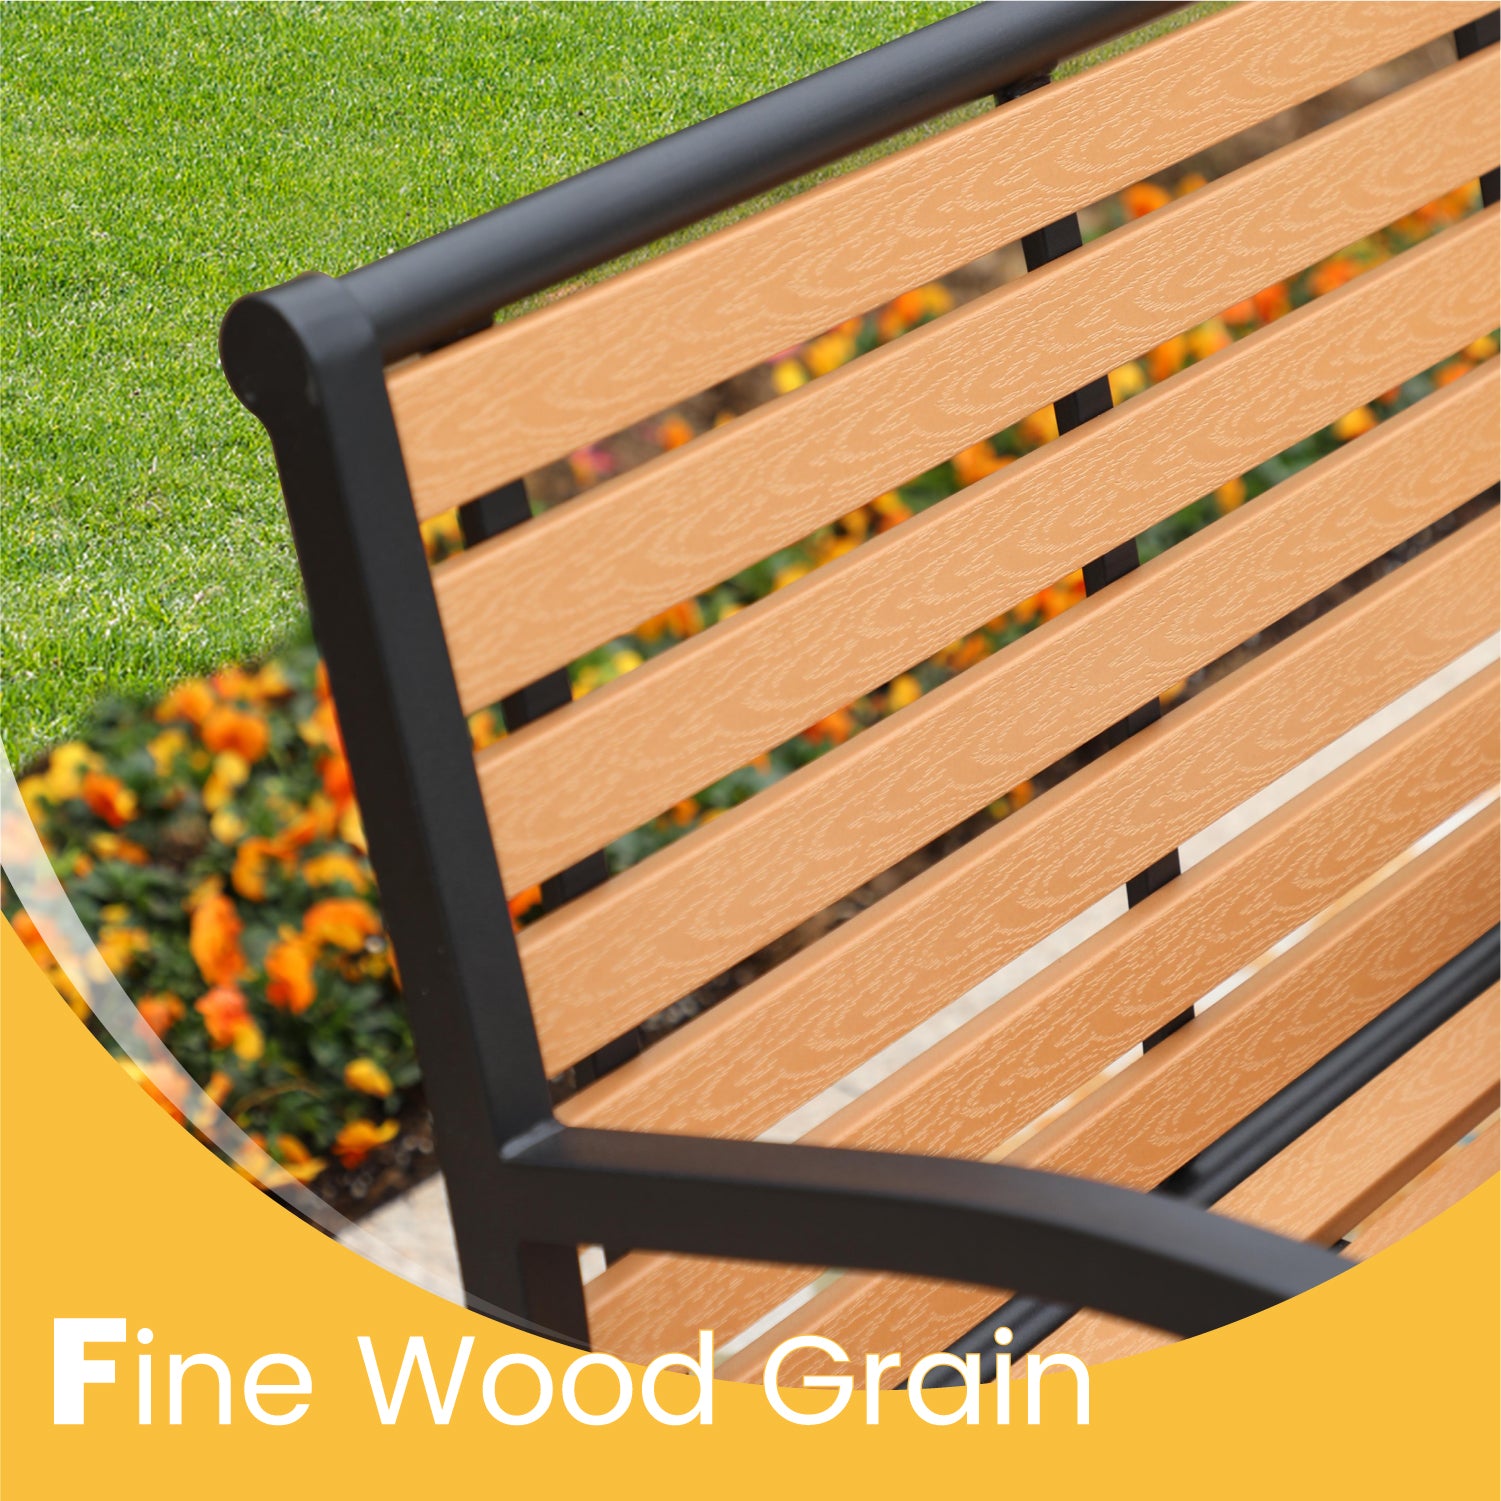 PHI VILLA Steel Wood-Plastic Outdoor Bench for Park, Garden, Backyard